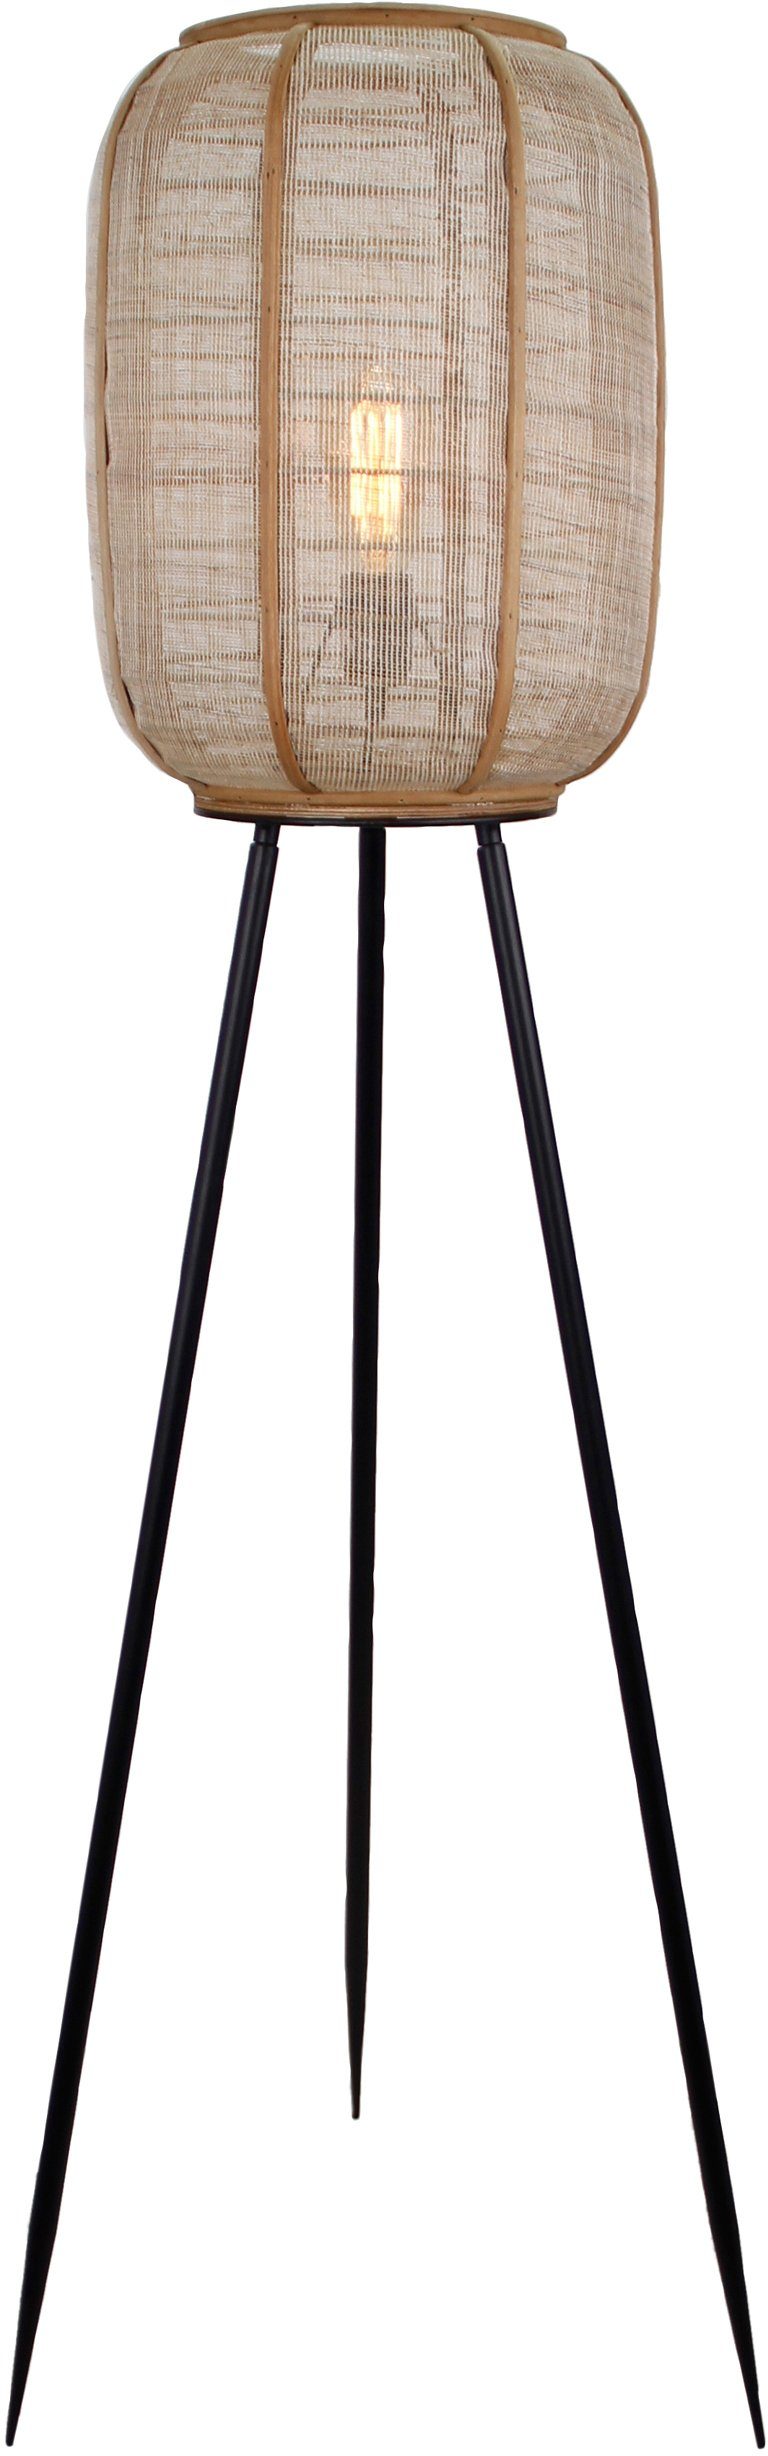 Holz Schirm Textil Leuchtmittel, und Höhe, ohne Standleuchte Home affaire 1,34m Stehlampe Rouez, aus mit dreibeinige